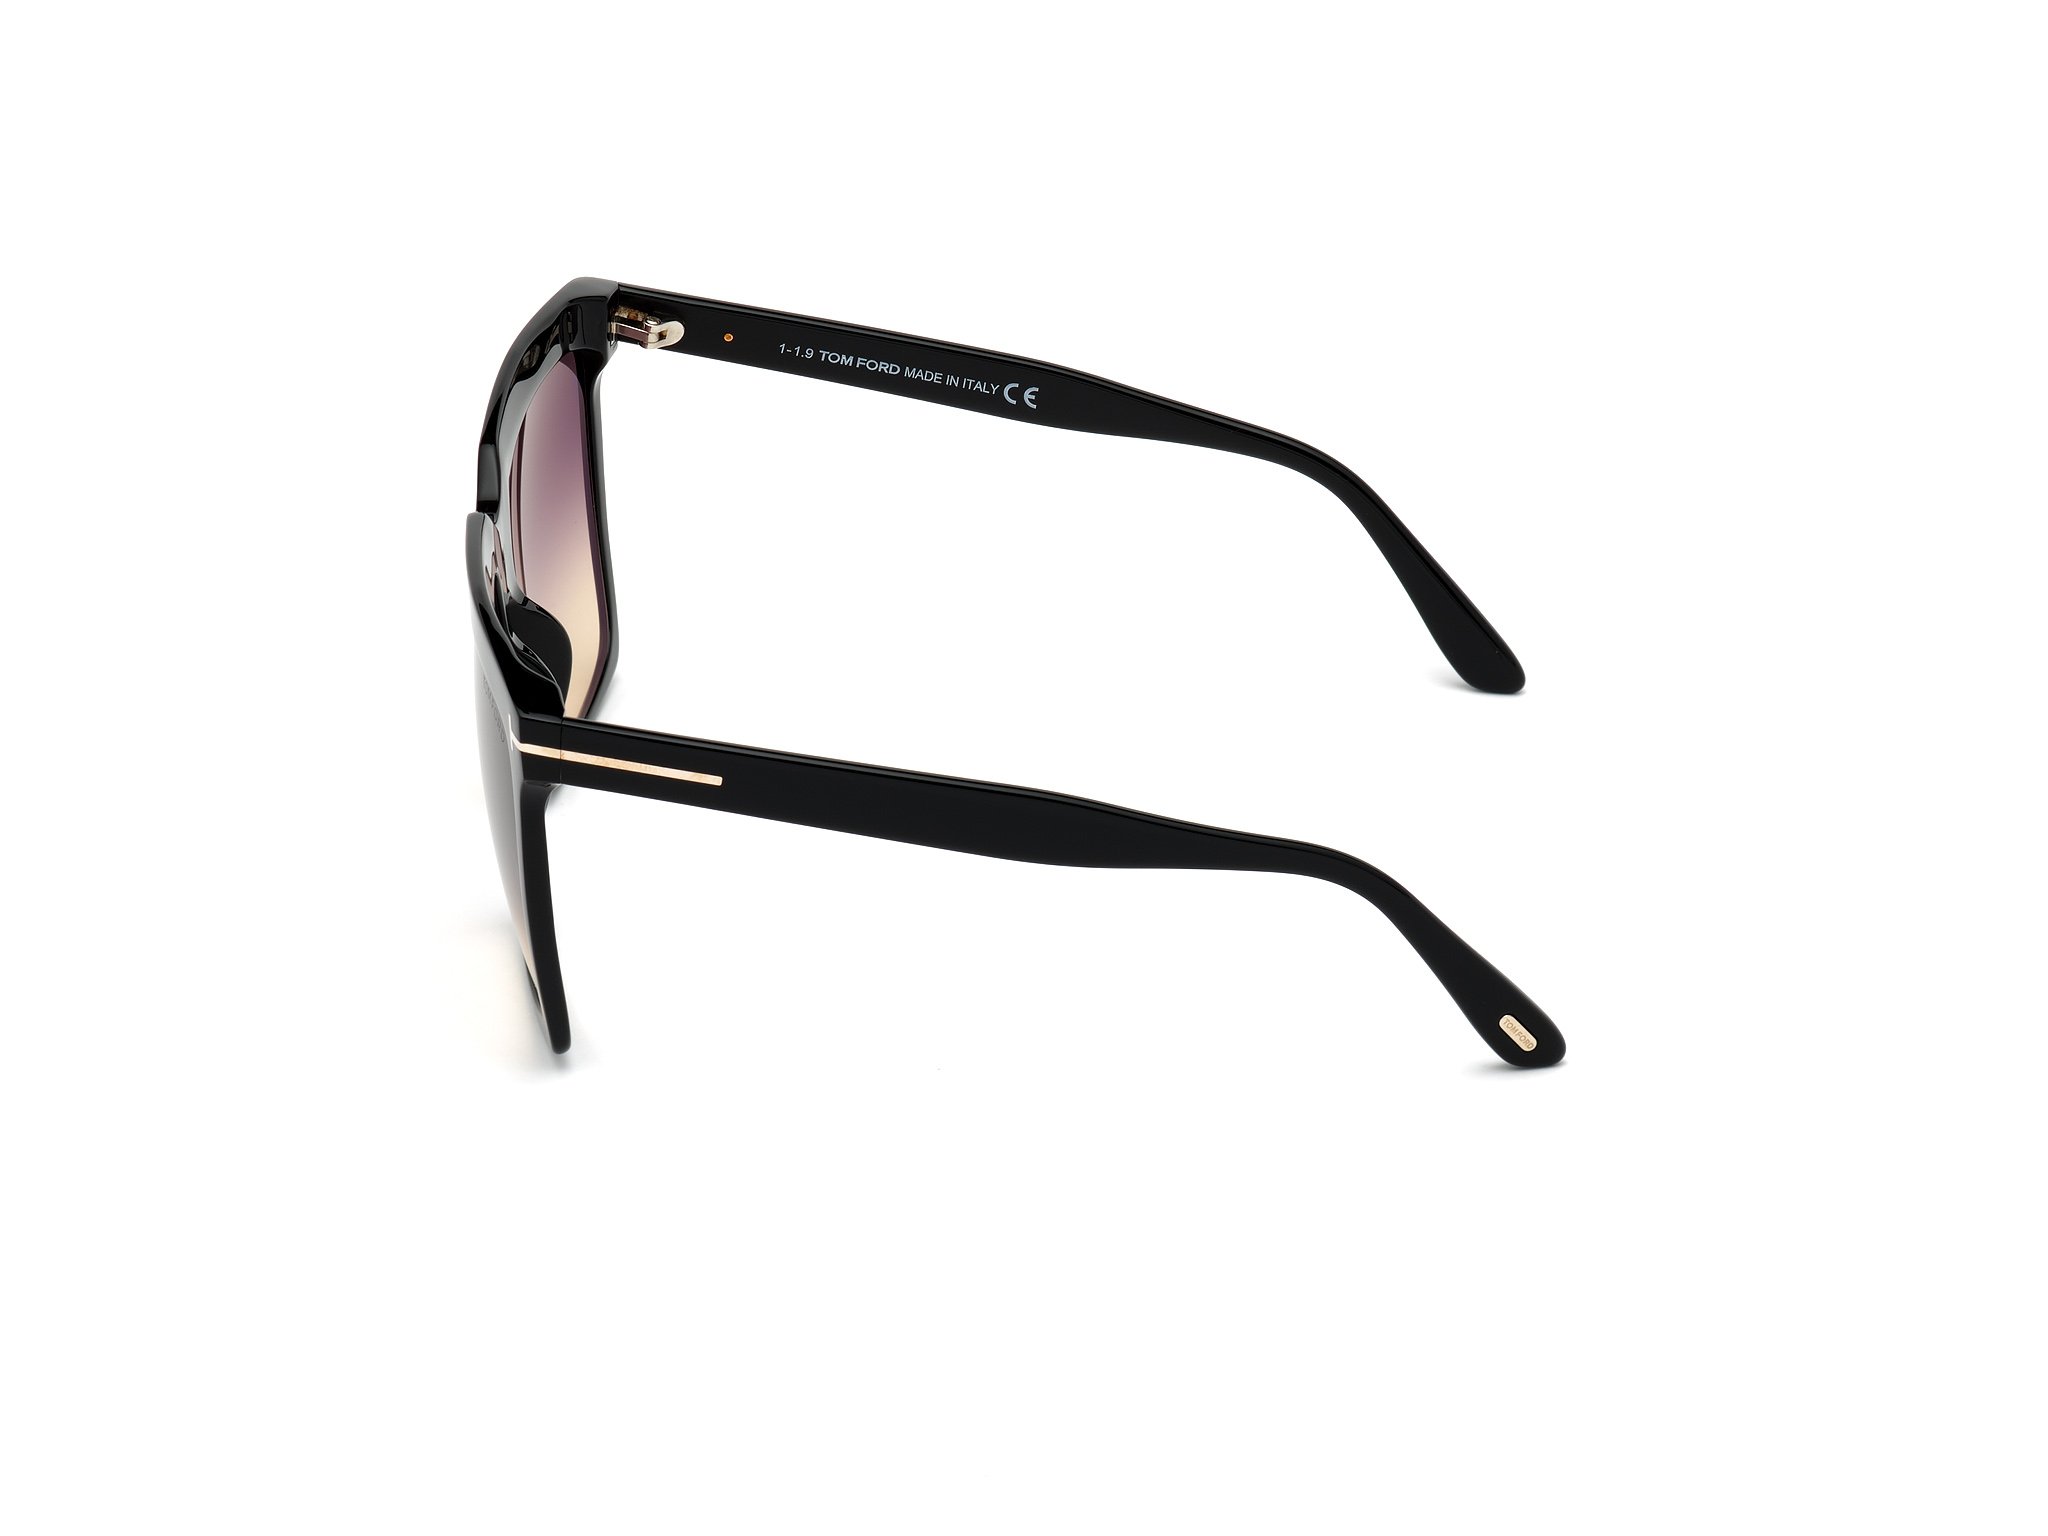 Das Bild zeigt die Sonnenbrille Sabrina FT0764 von der Marke Tom Ford in schwarz